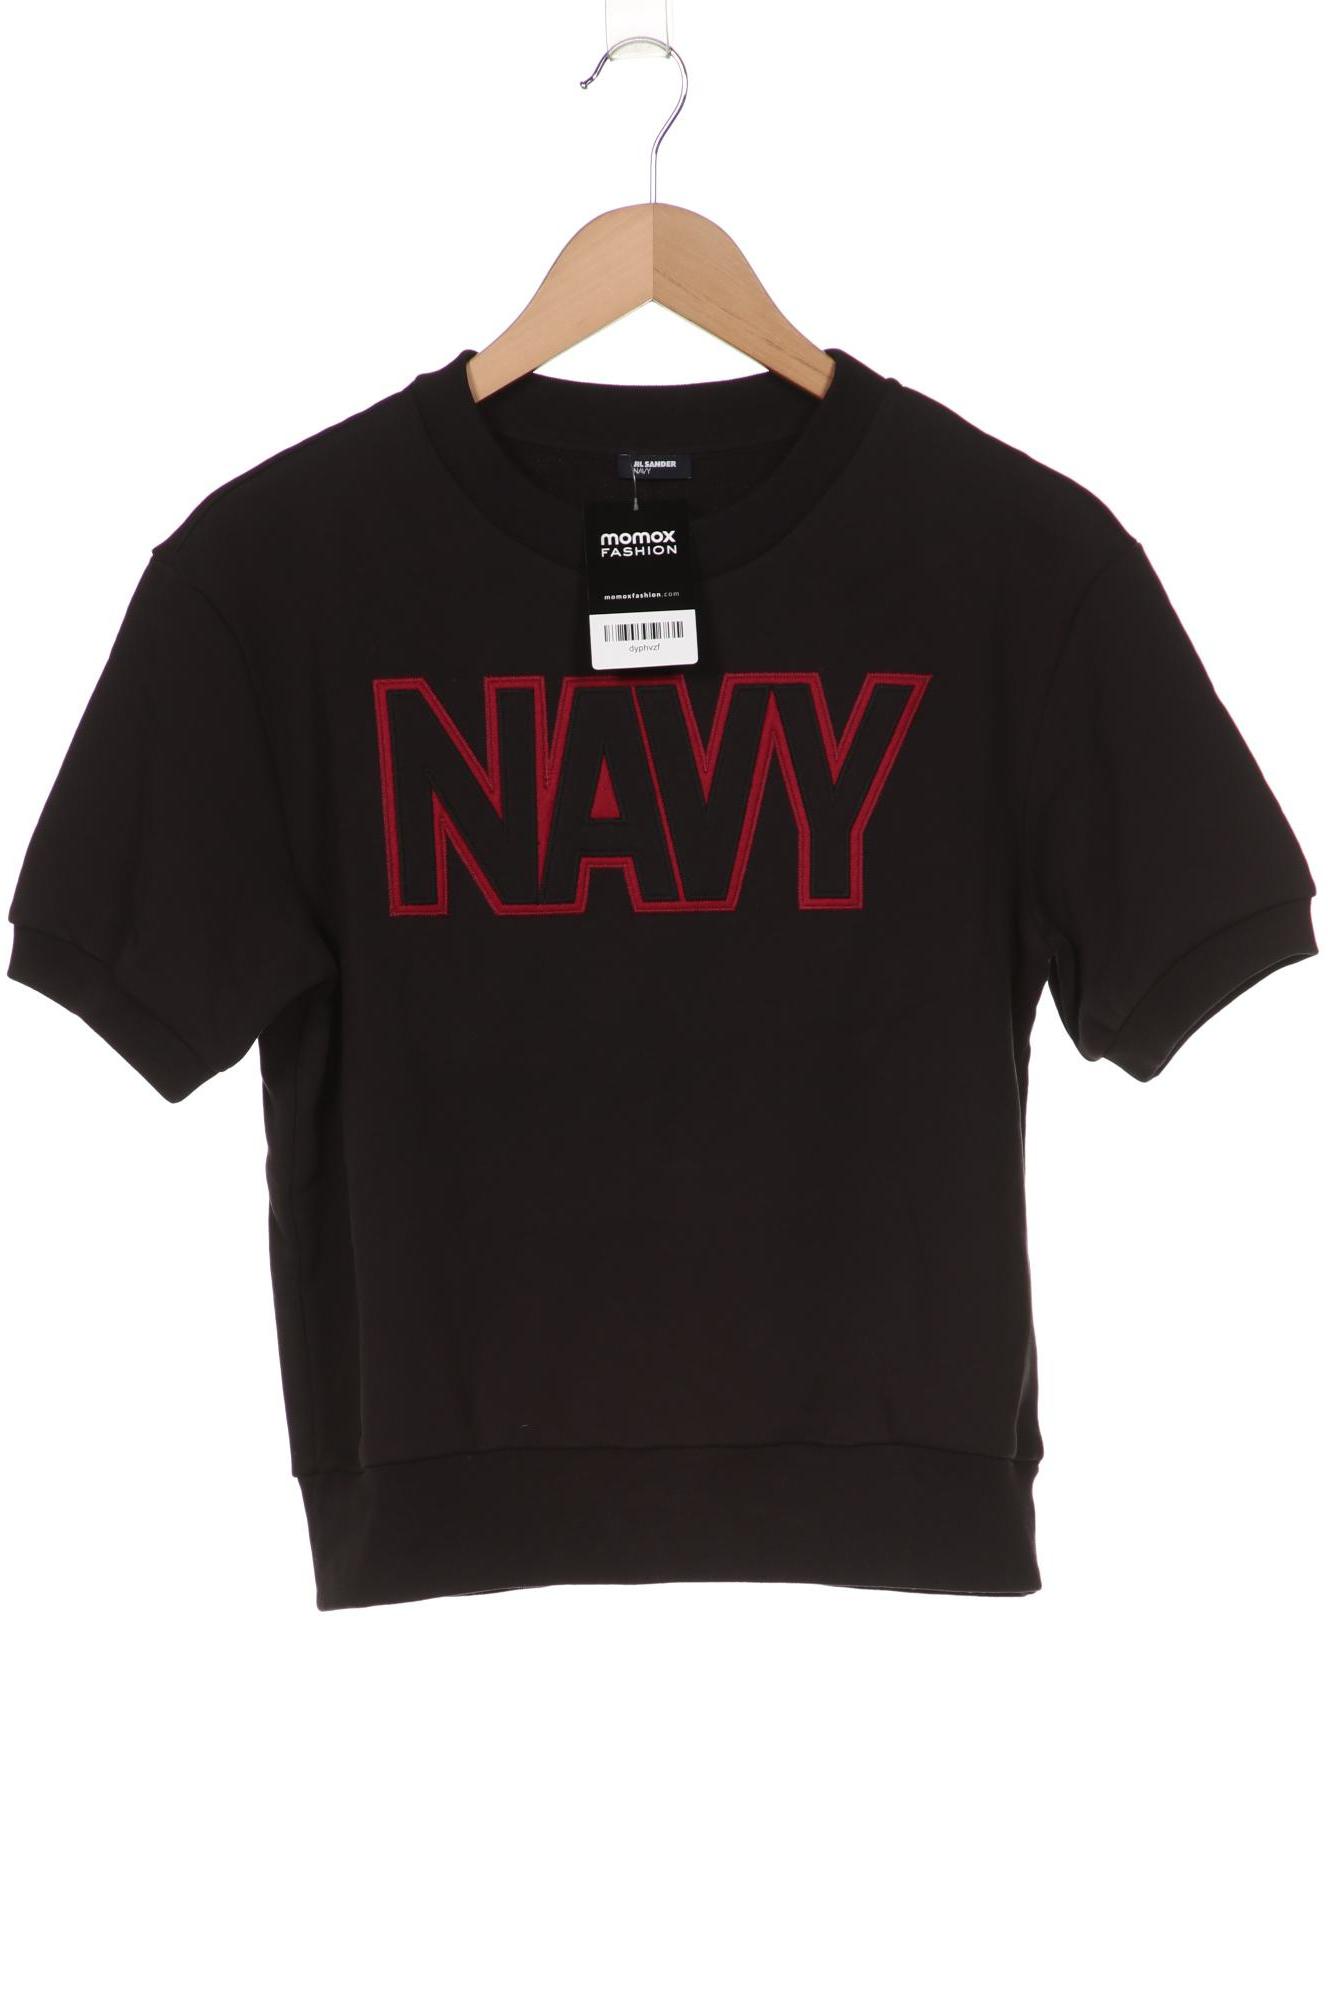 Jil Sander Navy Damen Sweatshirt, schwarz von Jil Sander Navy